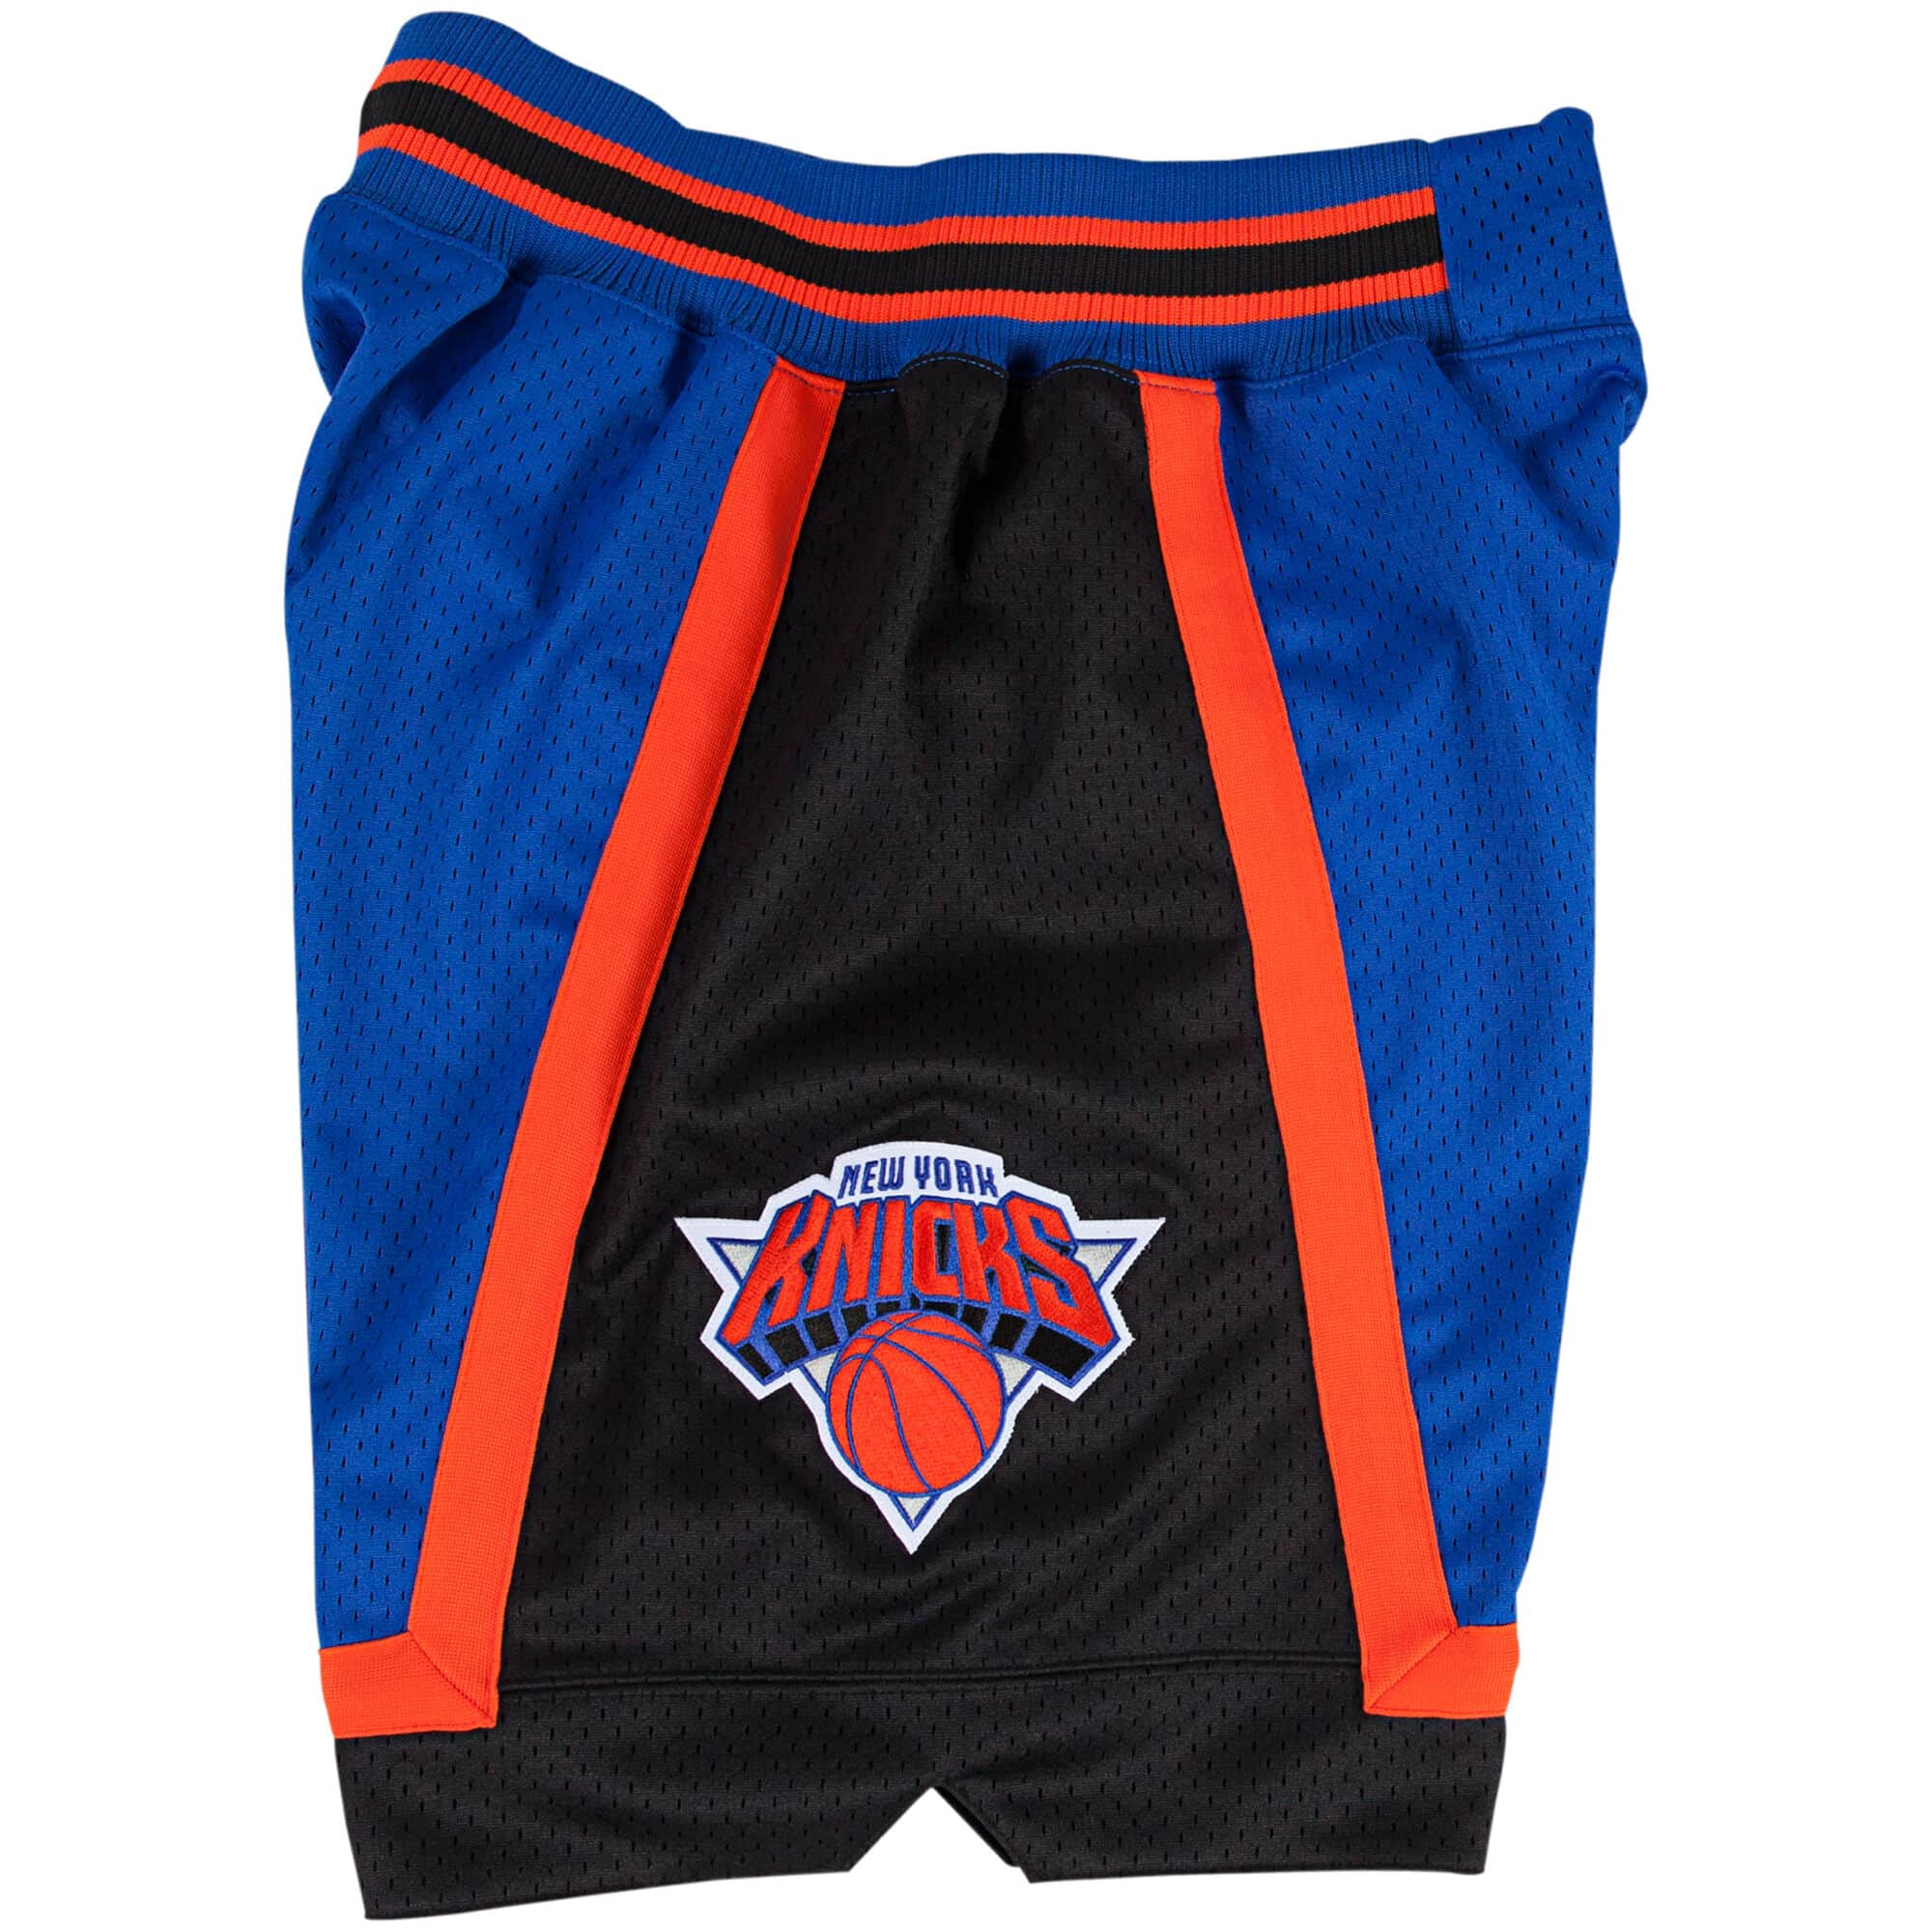 Authentic Pro Cut NY KNICKS shorts NBA